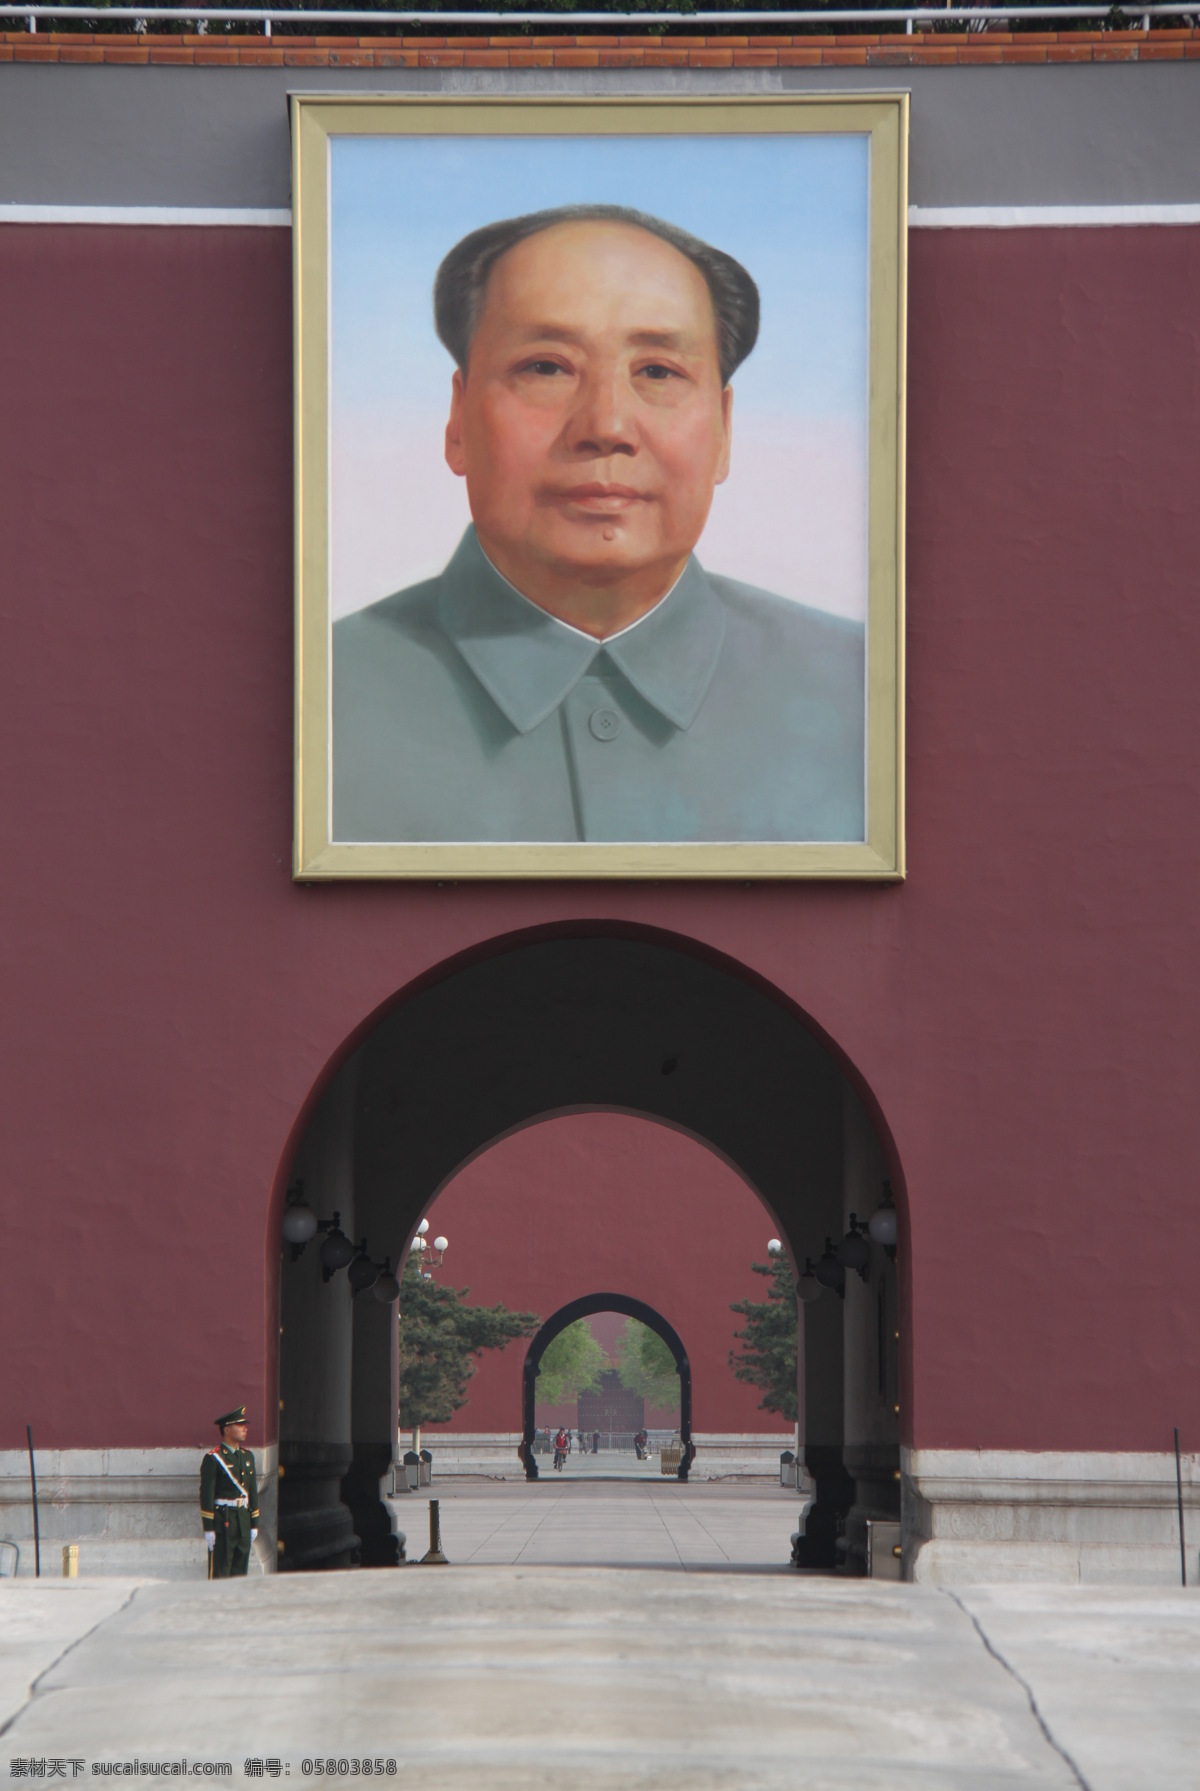 天安门 毛 主席 北京 毛主席 毛泽东 中轴线 风景 景色 景观 城门 旅游摄影 国内旅游